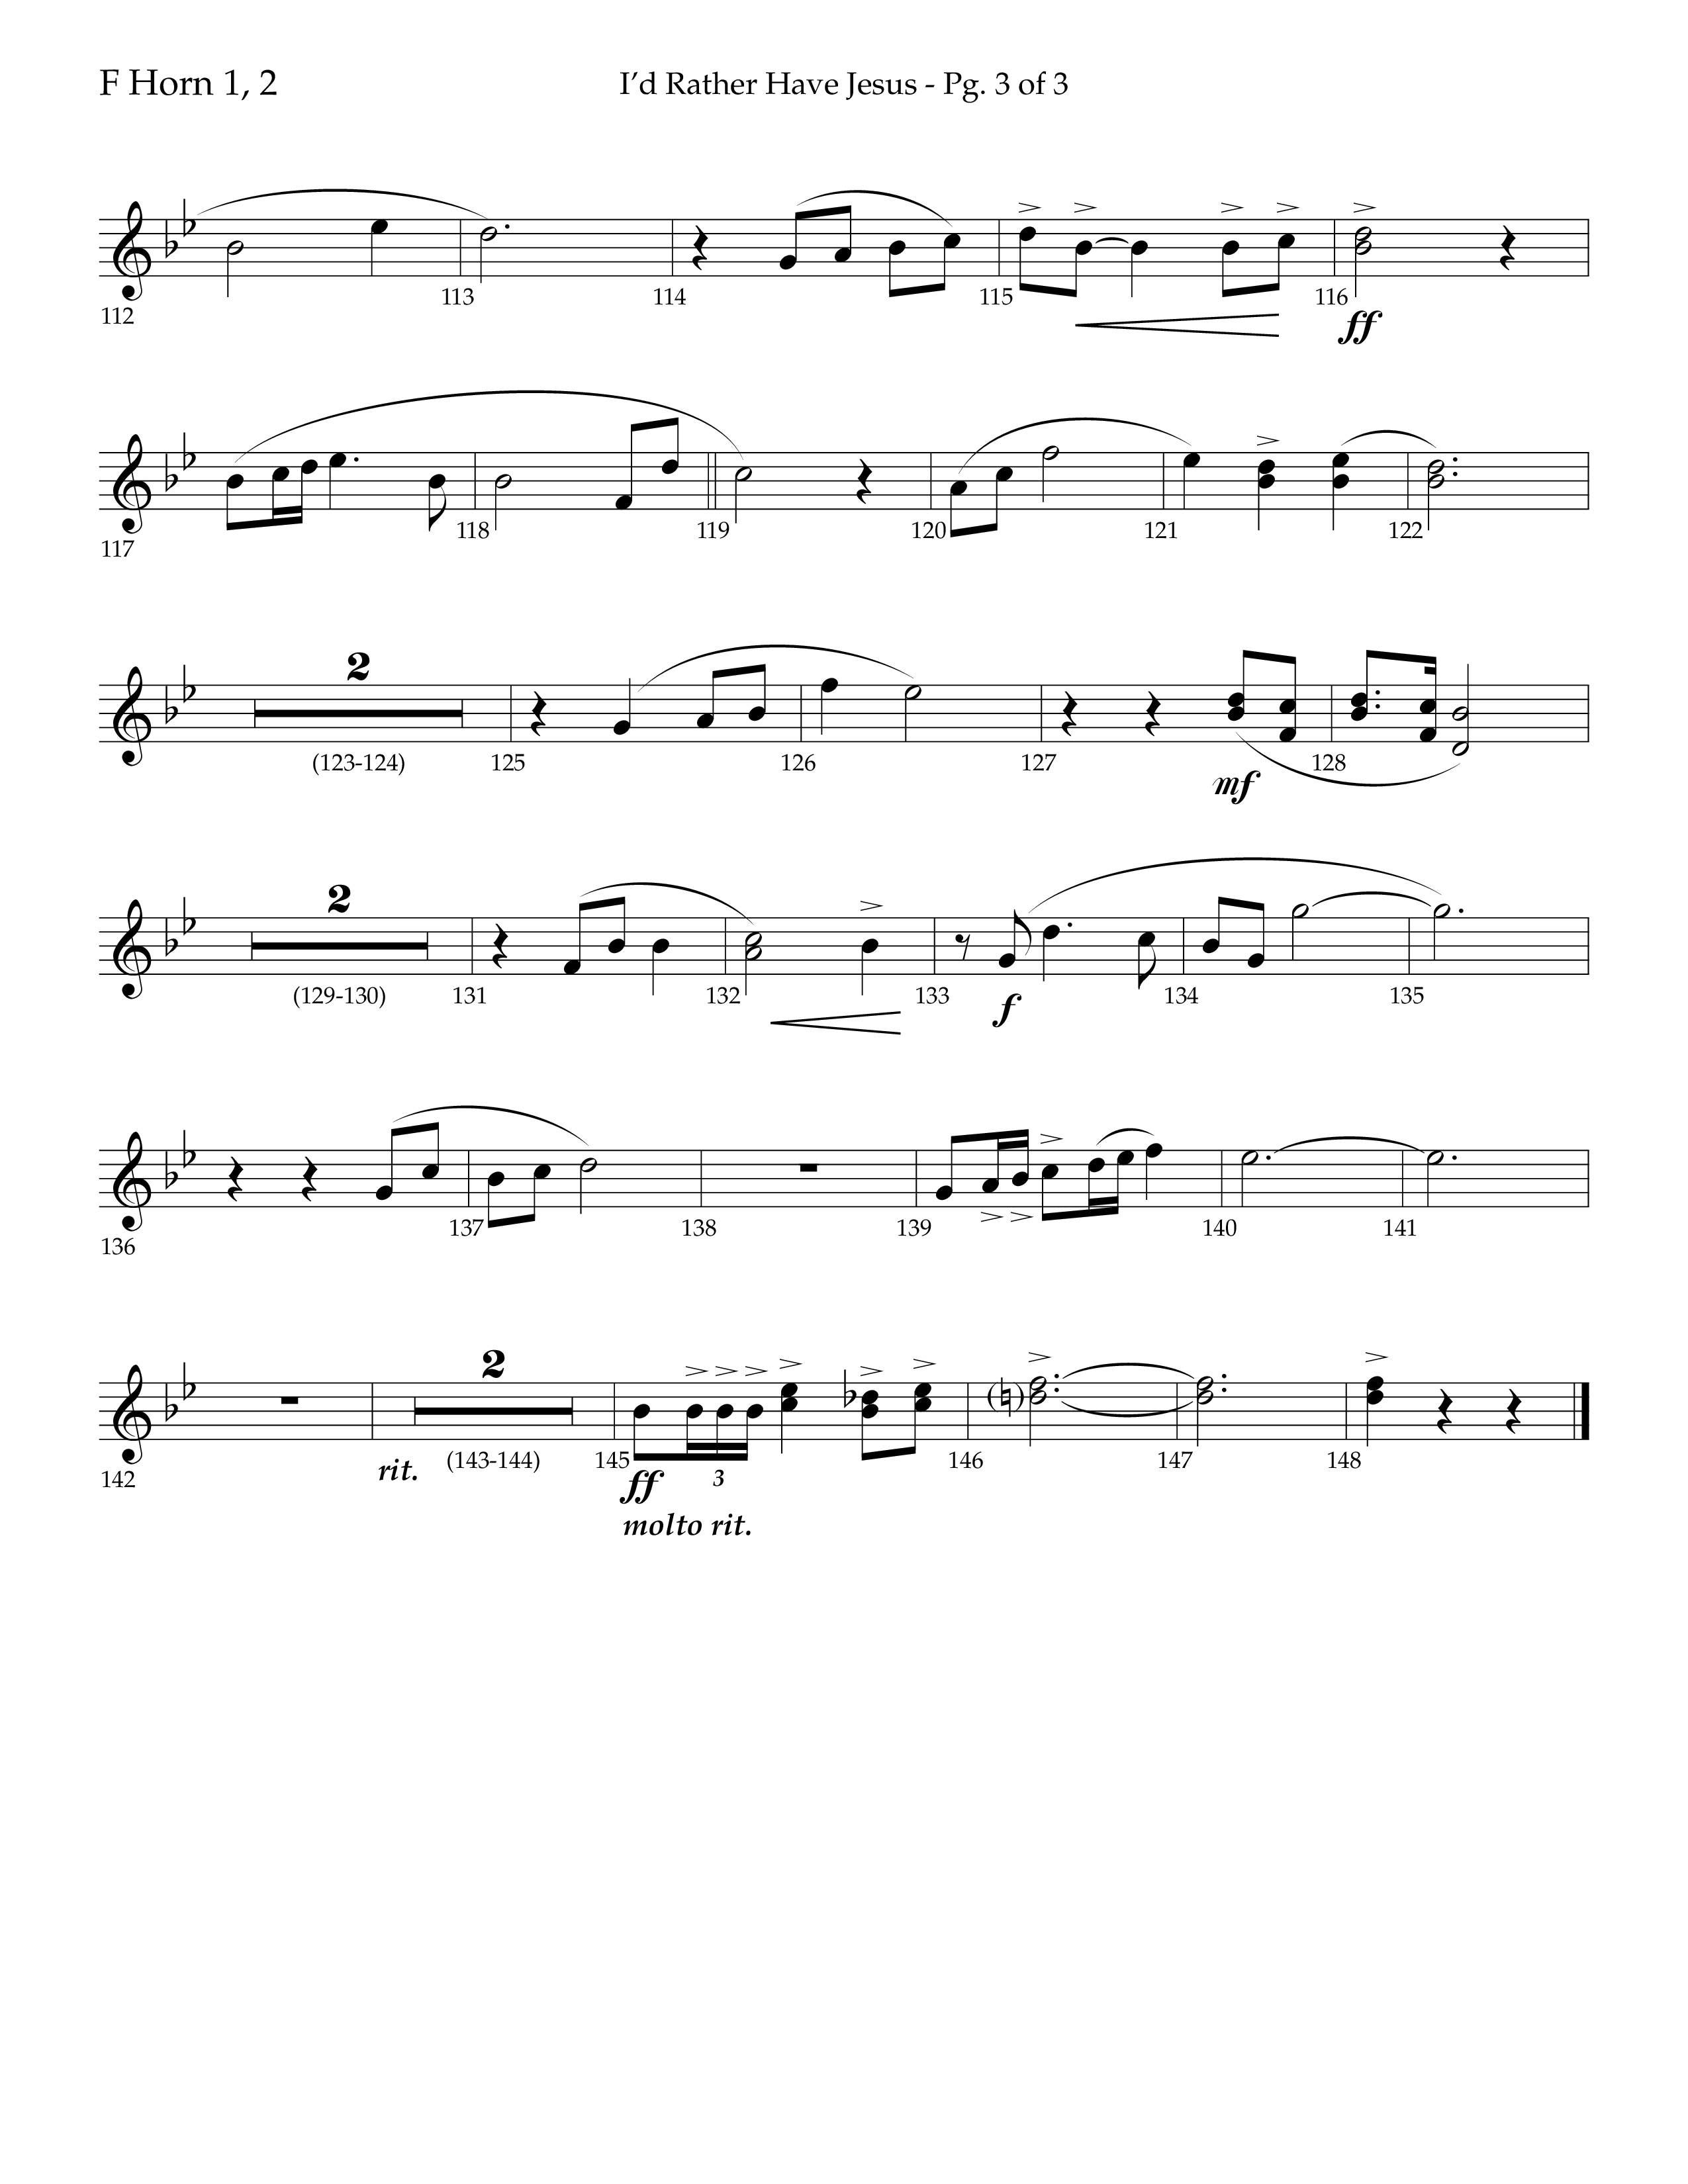 I'd Rather Have Jesus (Choral Anthem SATB) French Horn 1/2 (Lifeway Choral / Arr. Richard Kingsmore)